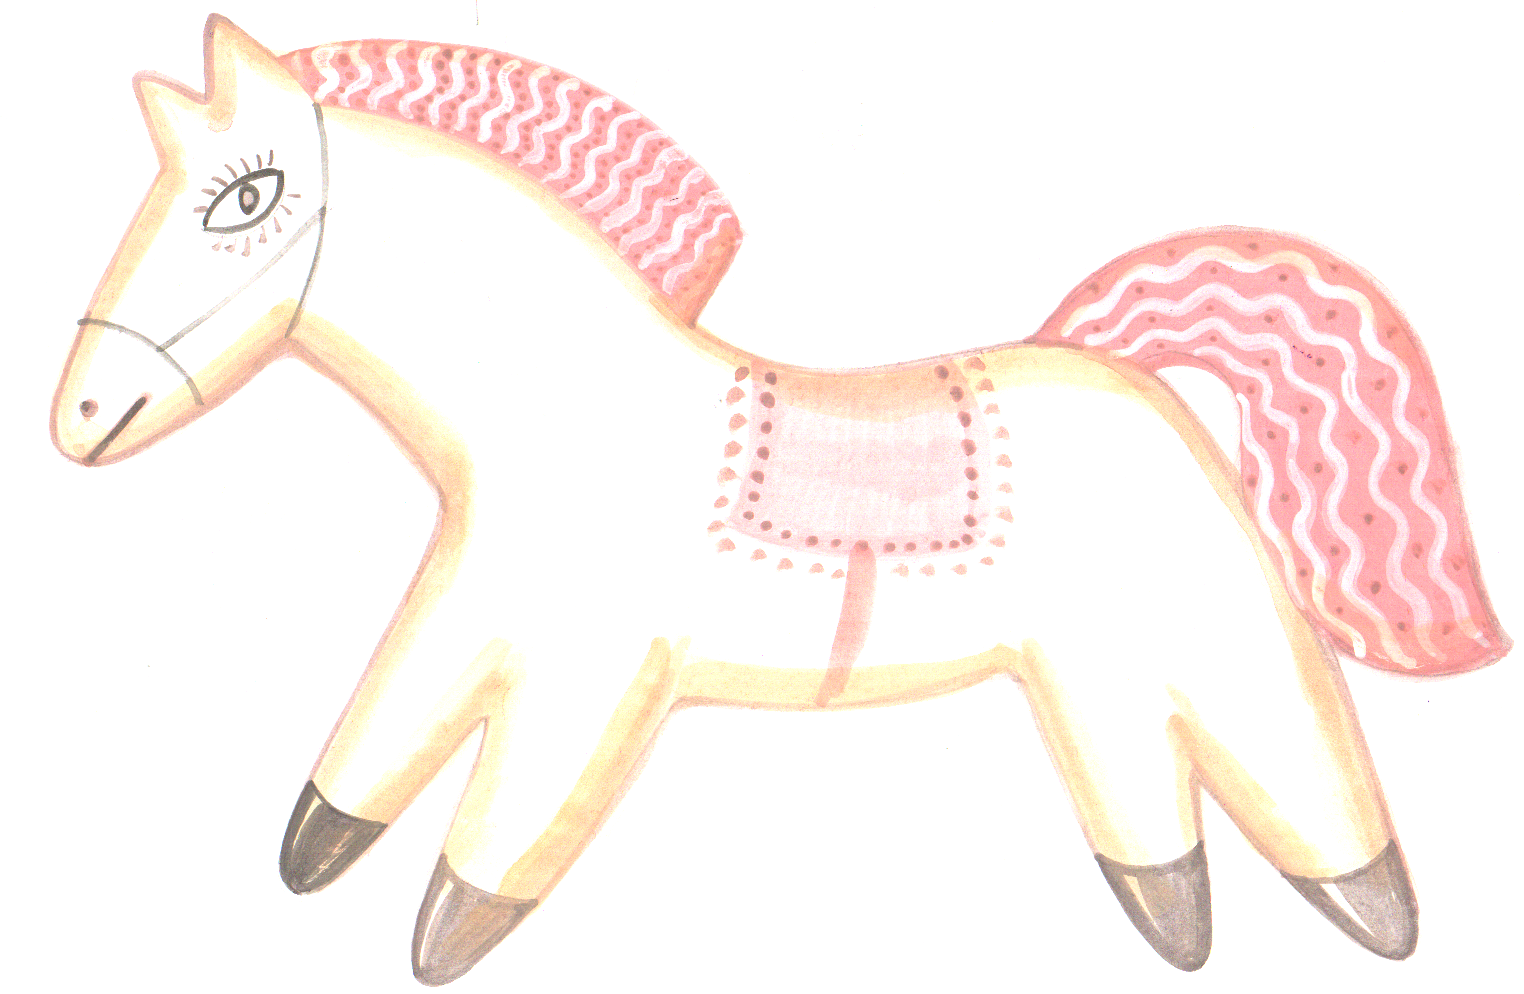 Астафьев пряник. Конь с розовой гривой. Астафьев конь с розовой гривой пряник. Розовый пряник Астафьев. Астафьев конь с розовой гривой иллюстрации.